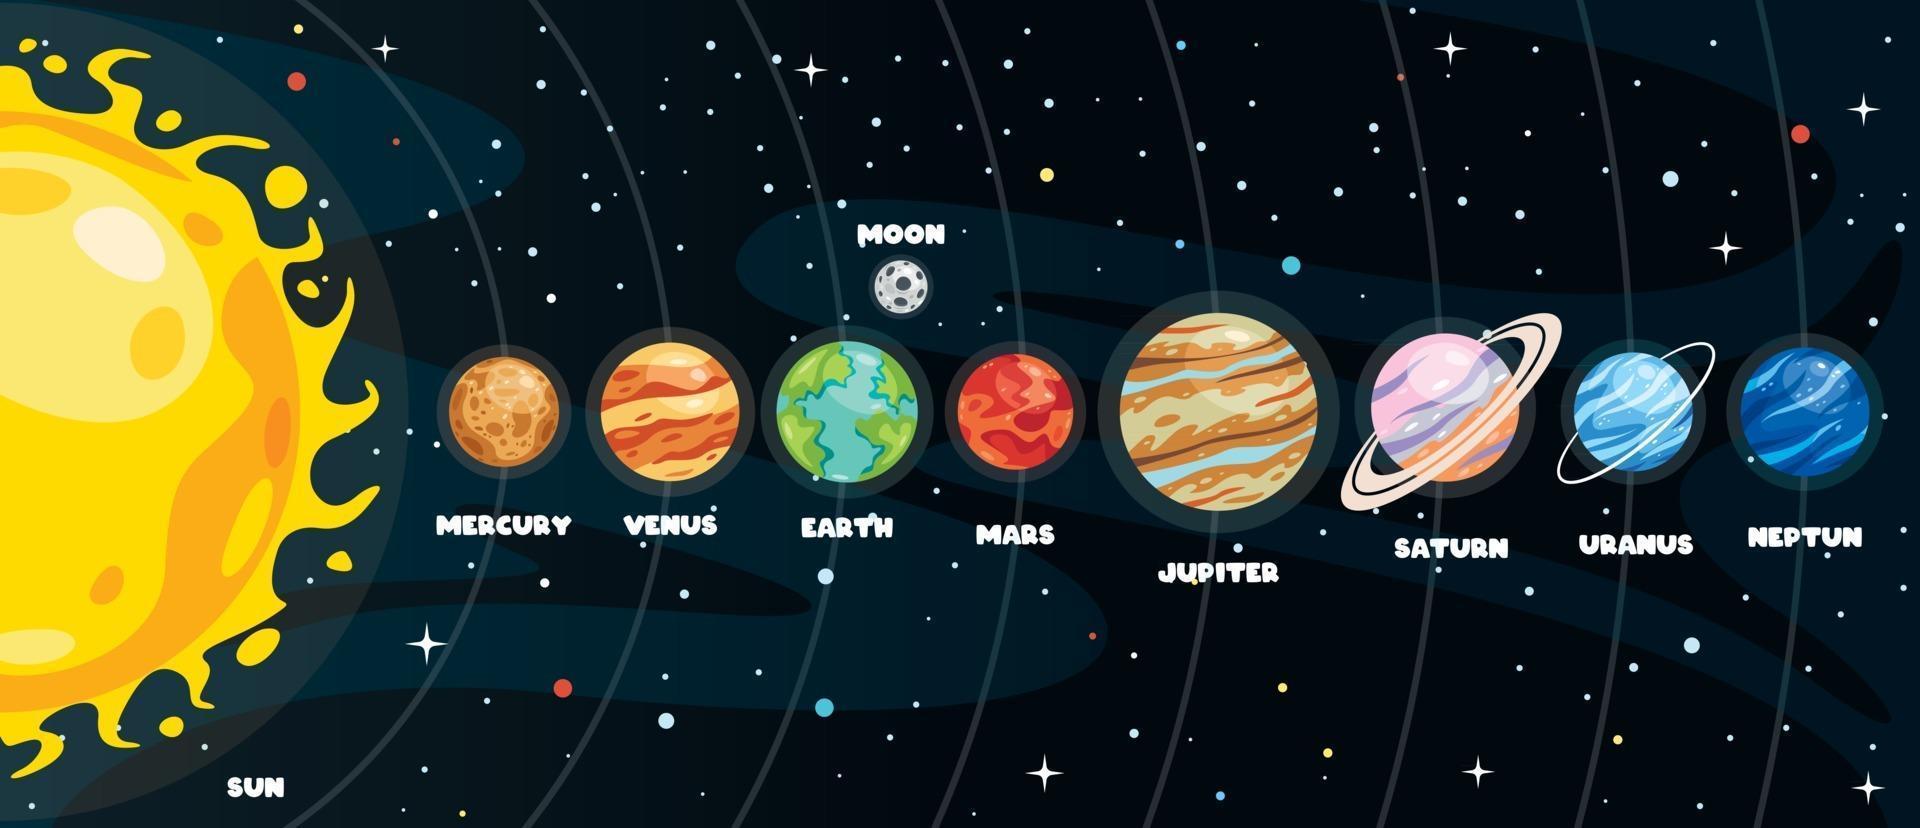 kleurrijke planeten van zonnestelsel vector